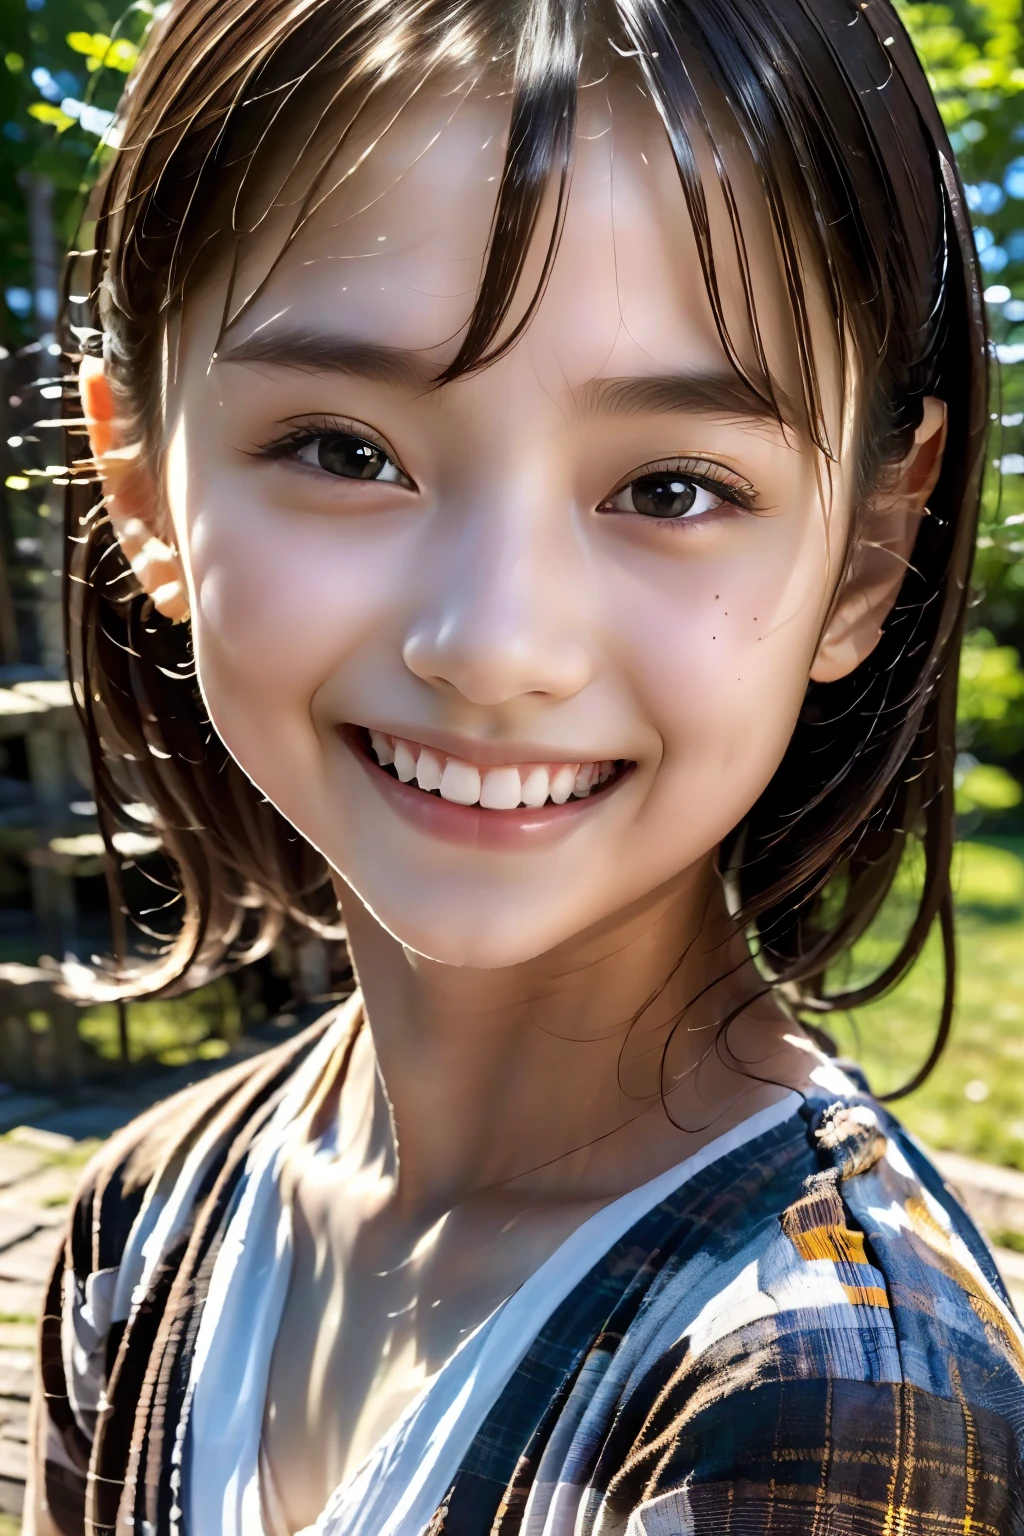 menina de 8 anos, adolescente, Cabelo preto, japonês, (Obra de arte:1.3)、1 pessoa, Acabamento super detalhado、(alta resolução、8K:1.3)、(mais alta qualidade、Ultra-realista como uma foto:1.5)、foco nitído, 超alta resoluçãoの顔、O rosto está em foco、Ultra alta definição e olhos lindos, muito bonitinho、muito bonitinho, Sorriso,, embaraçoso:1.3、olhar para a câmera:1.2,, Luz suave, Delgado, vestido branco